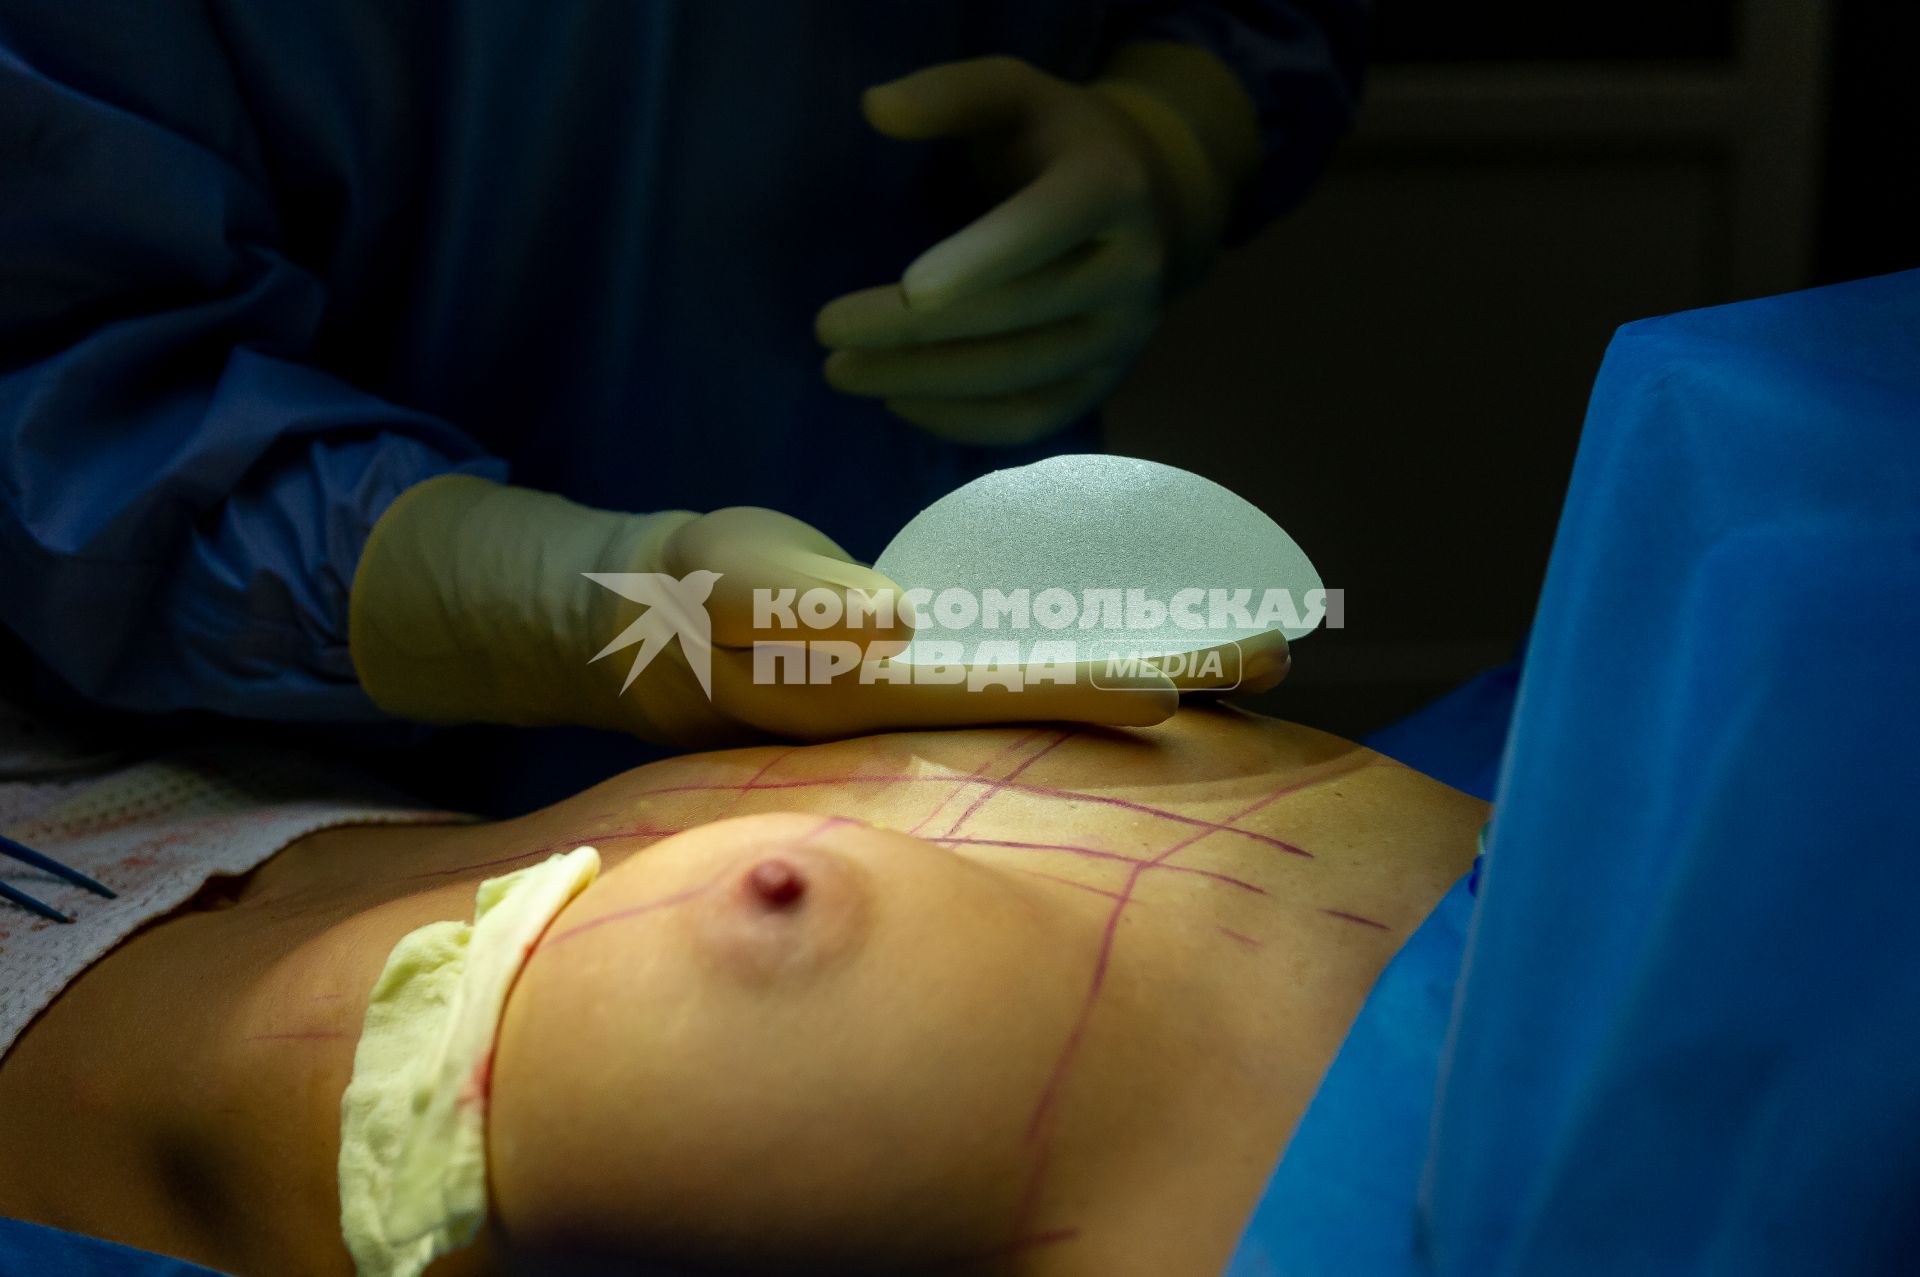 Санкт-Петербург. Операция по пластике груди в клинике имени Н.И. Пирогова.